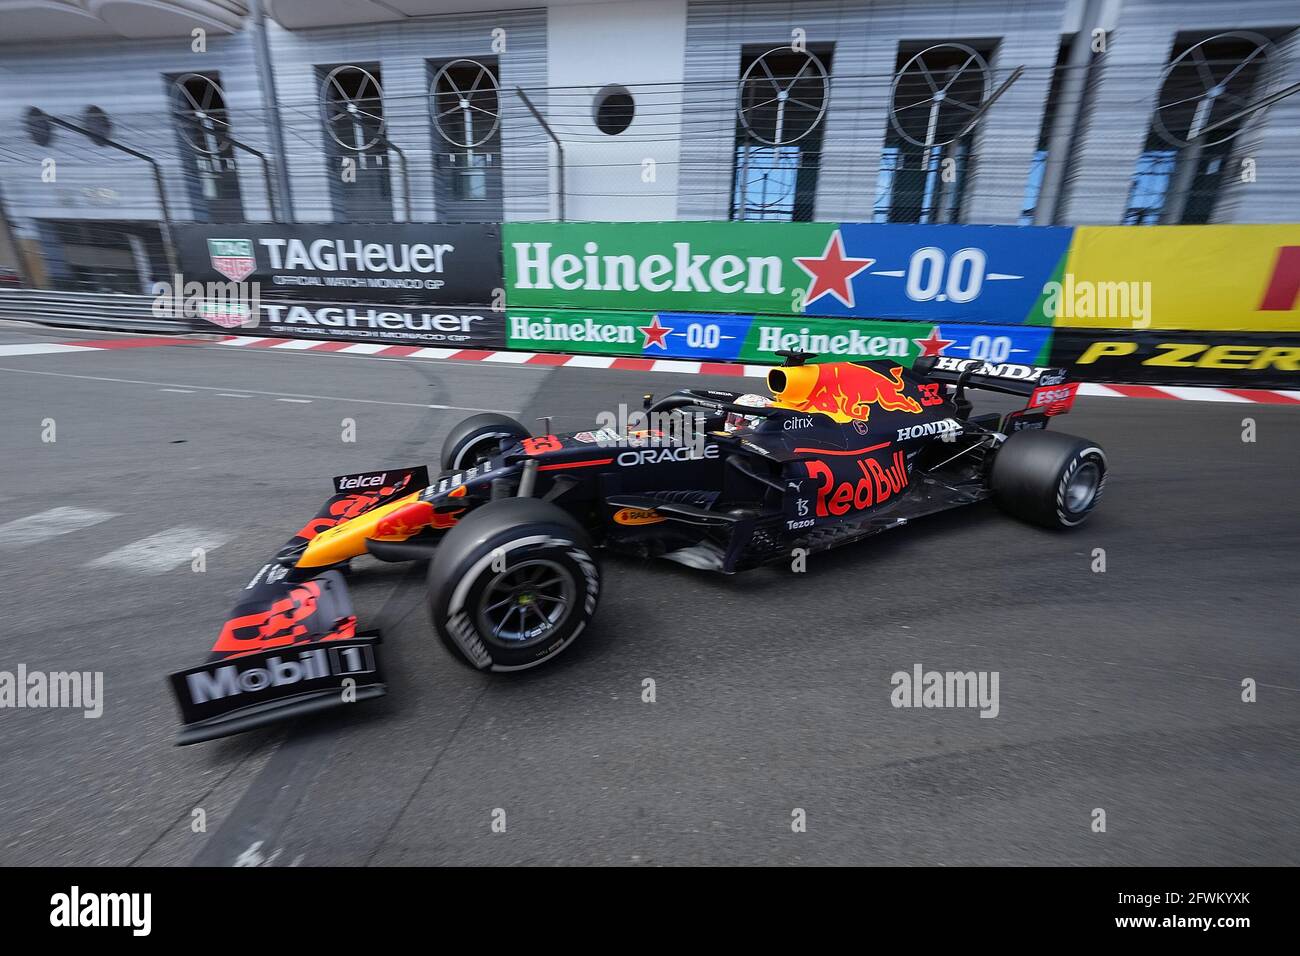 Ciudad de Mónaco, Mónaco. 23rd de mayo de 2021. Motorsport: Campeonato Mundial de Fórmula 1, Gran Premio de Mónaco. El piloto holandés Max Verstappen del equipo Red Bull Racing en la pista. Crédito: Hasan Bratic/dpa/Alamy Live News Foto de stock